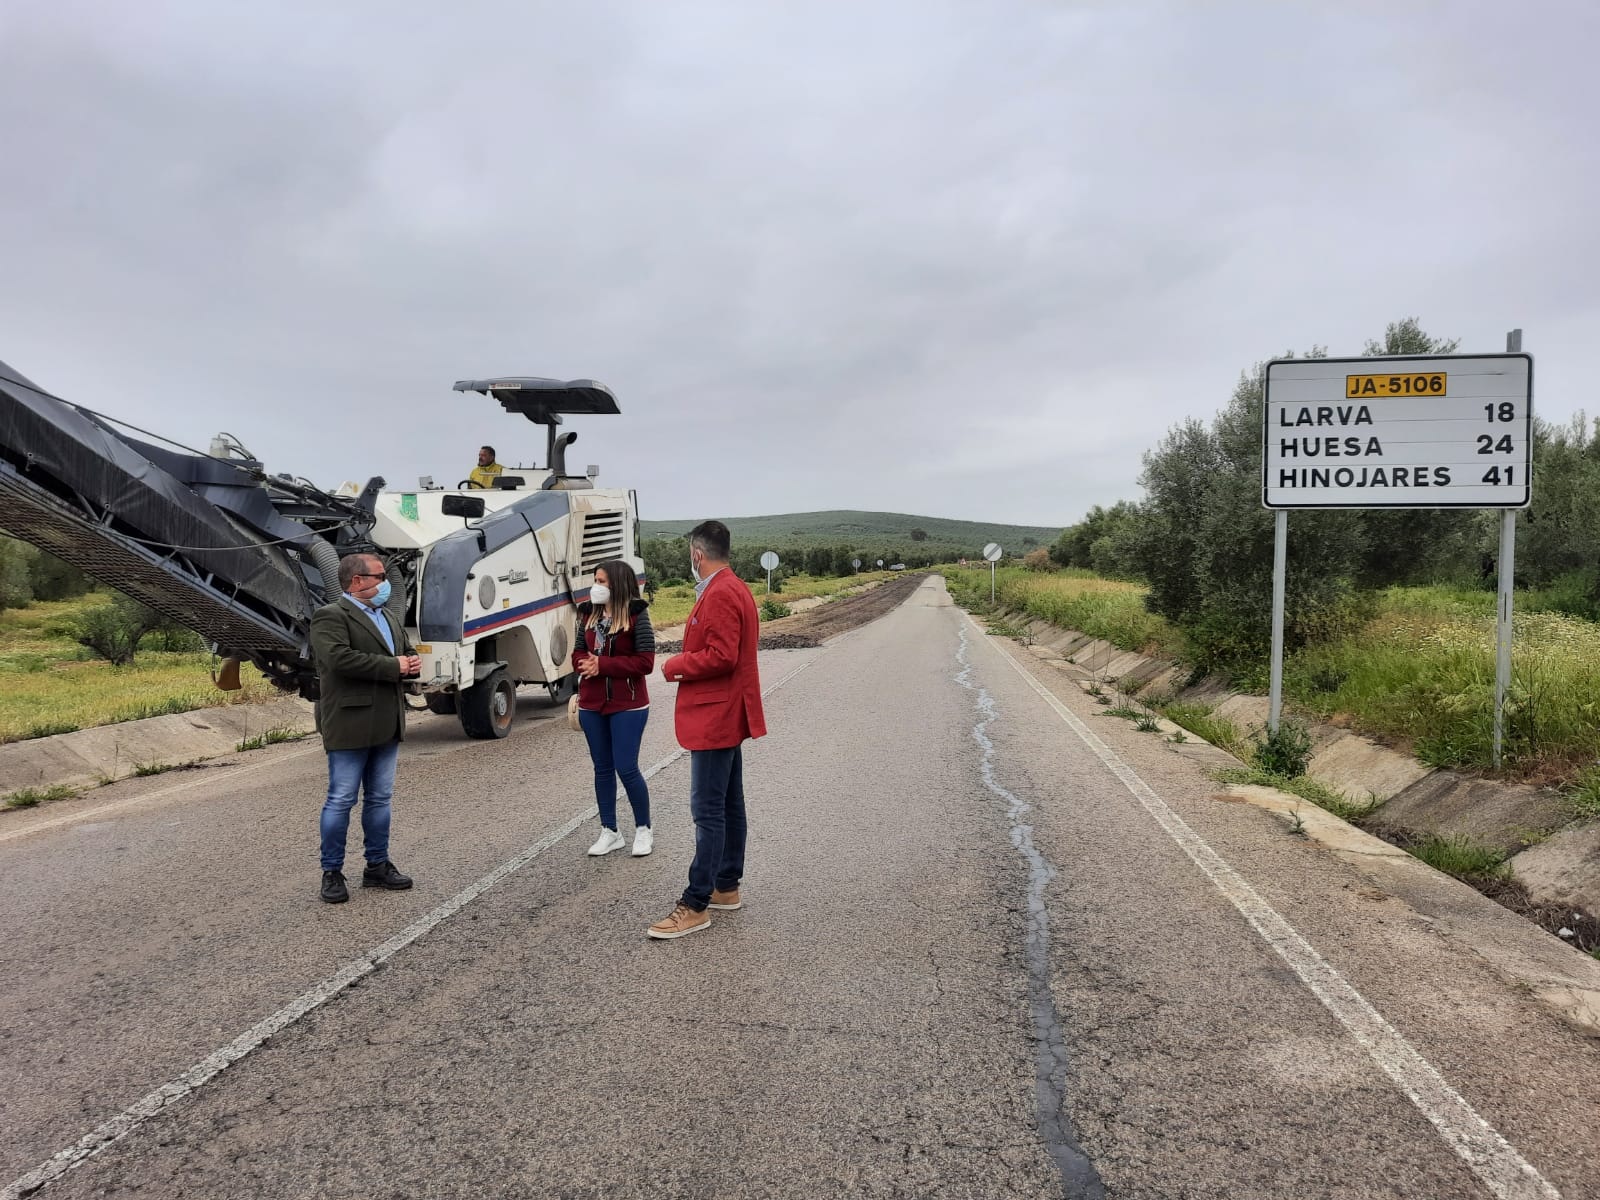 Diputación inicia las obras en la carretera JA-5106 que da acceso a Larva y a la zona más sudoriental de la provincia